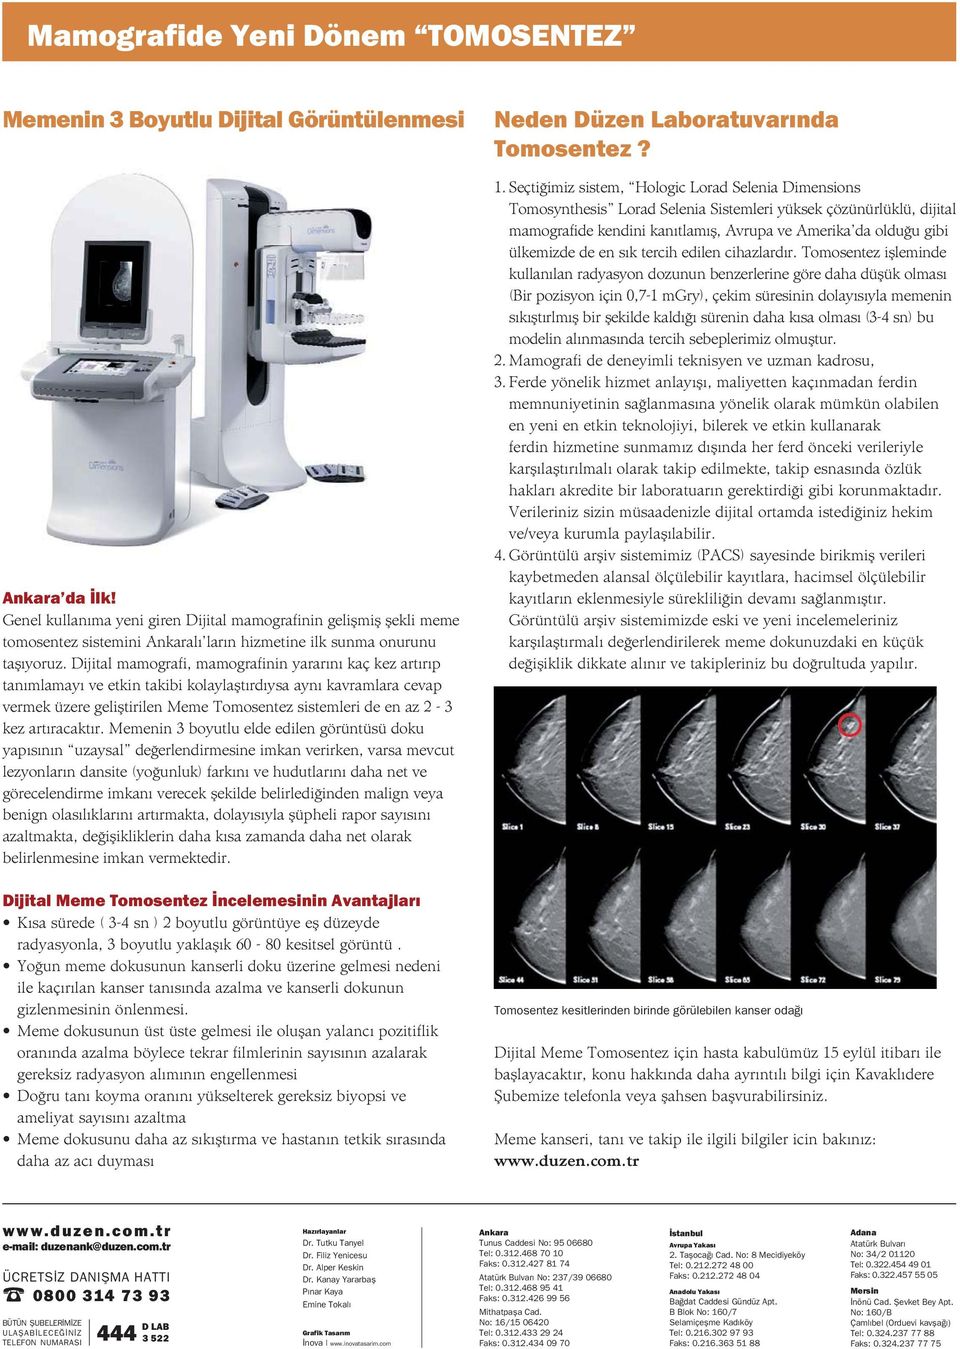 Dijital mamografi, mamografinin yararını kaç kez artırıp tanımlamayı ve etkin takibi kolaylaştırdıysa aynı kavramlara cevap vermek üzere geliştirilen Meme Tomosentez sistemleri de en az 2-3 kez